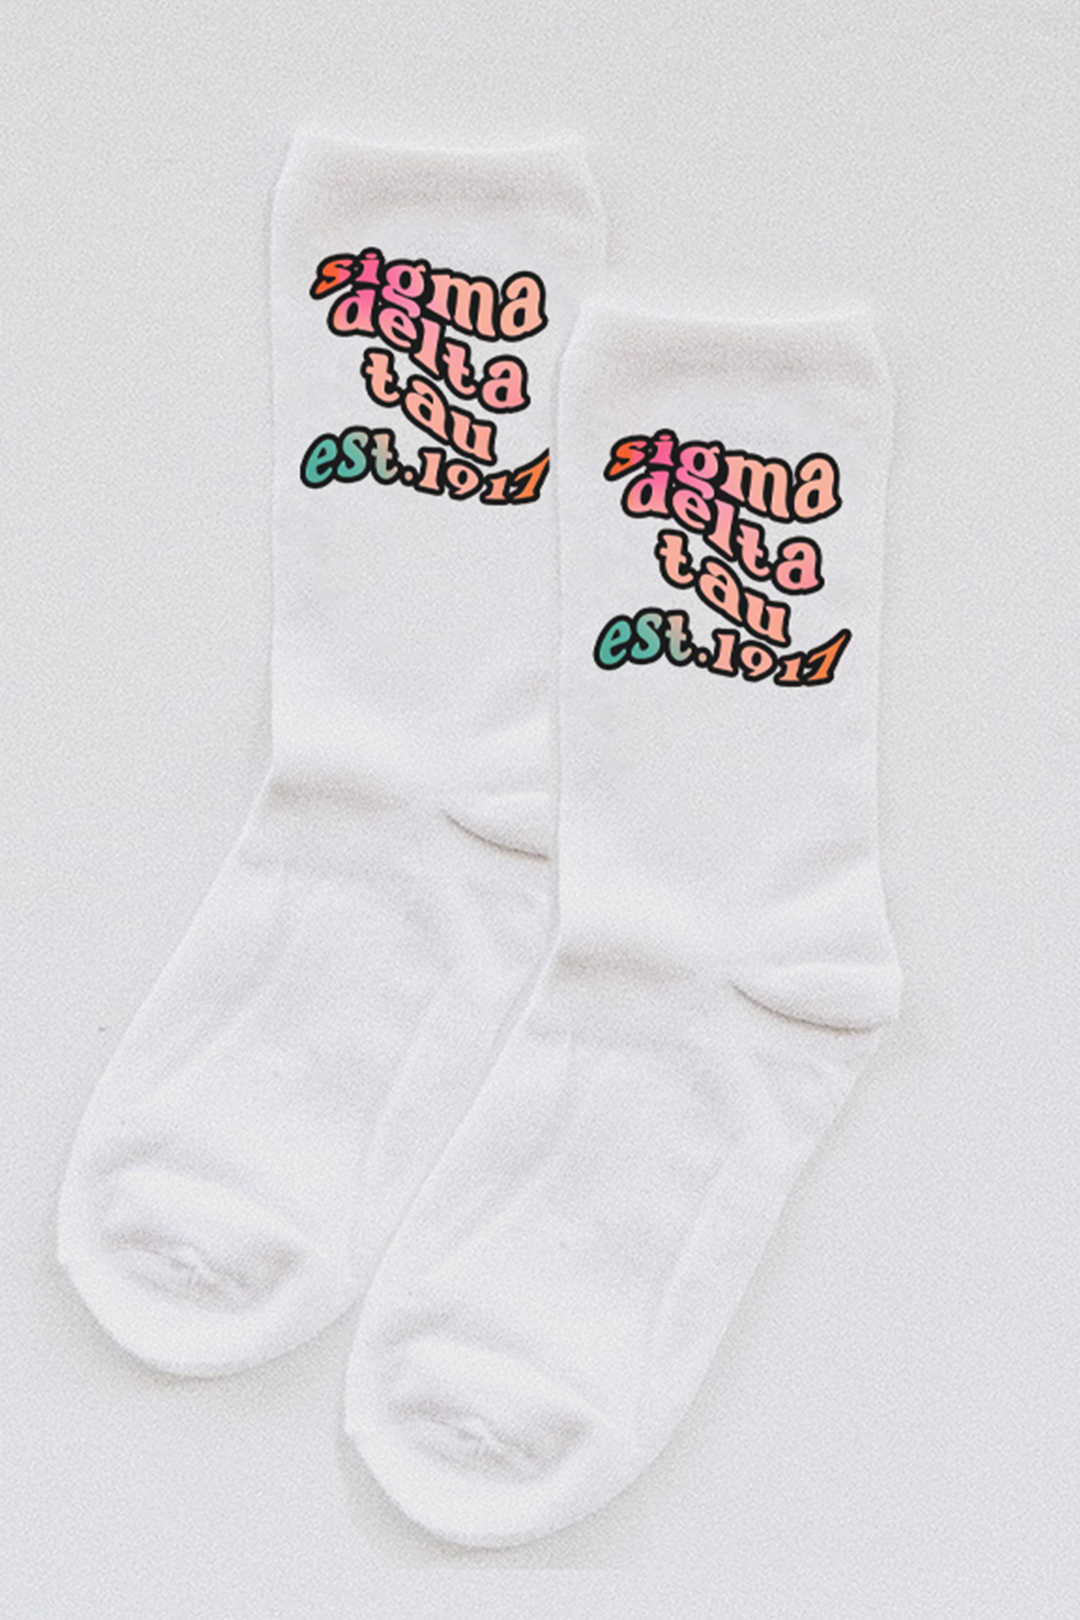 Gradient socks - Sigma Delta Tau